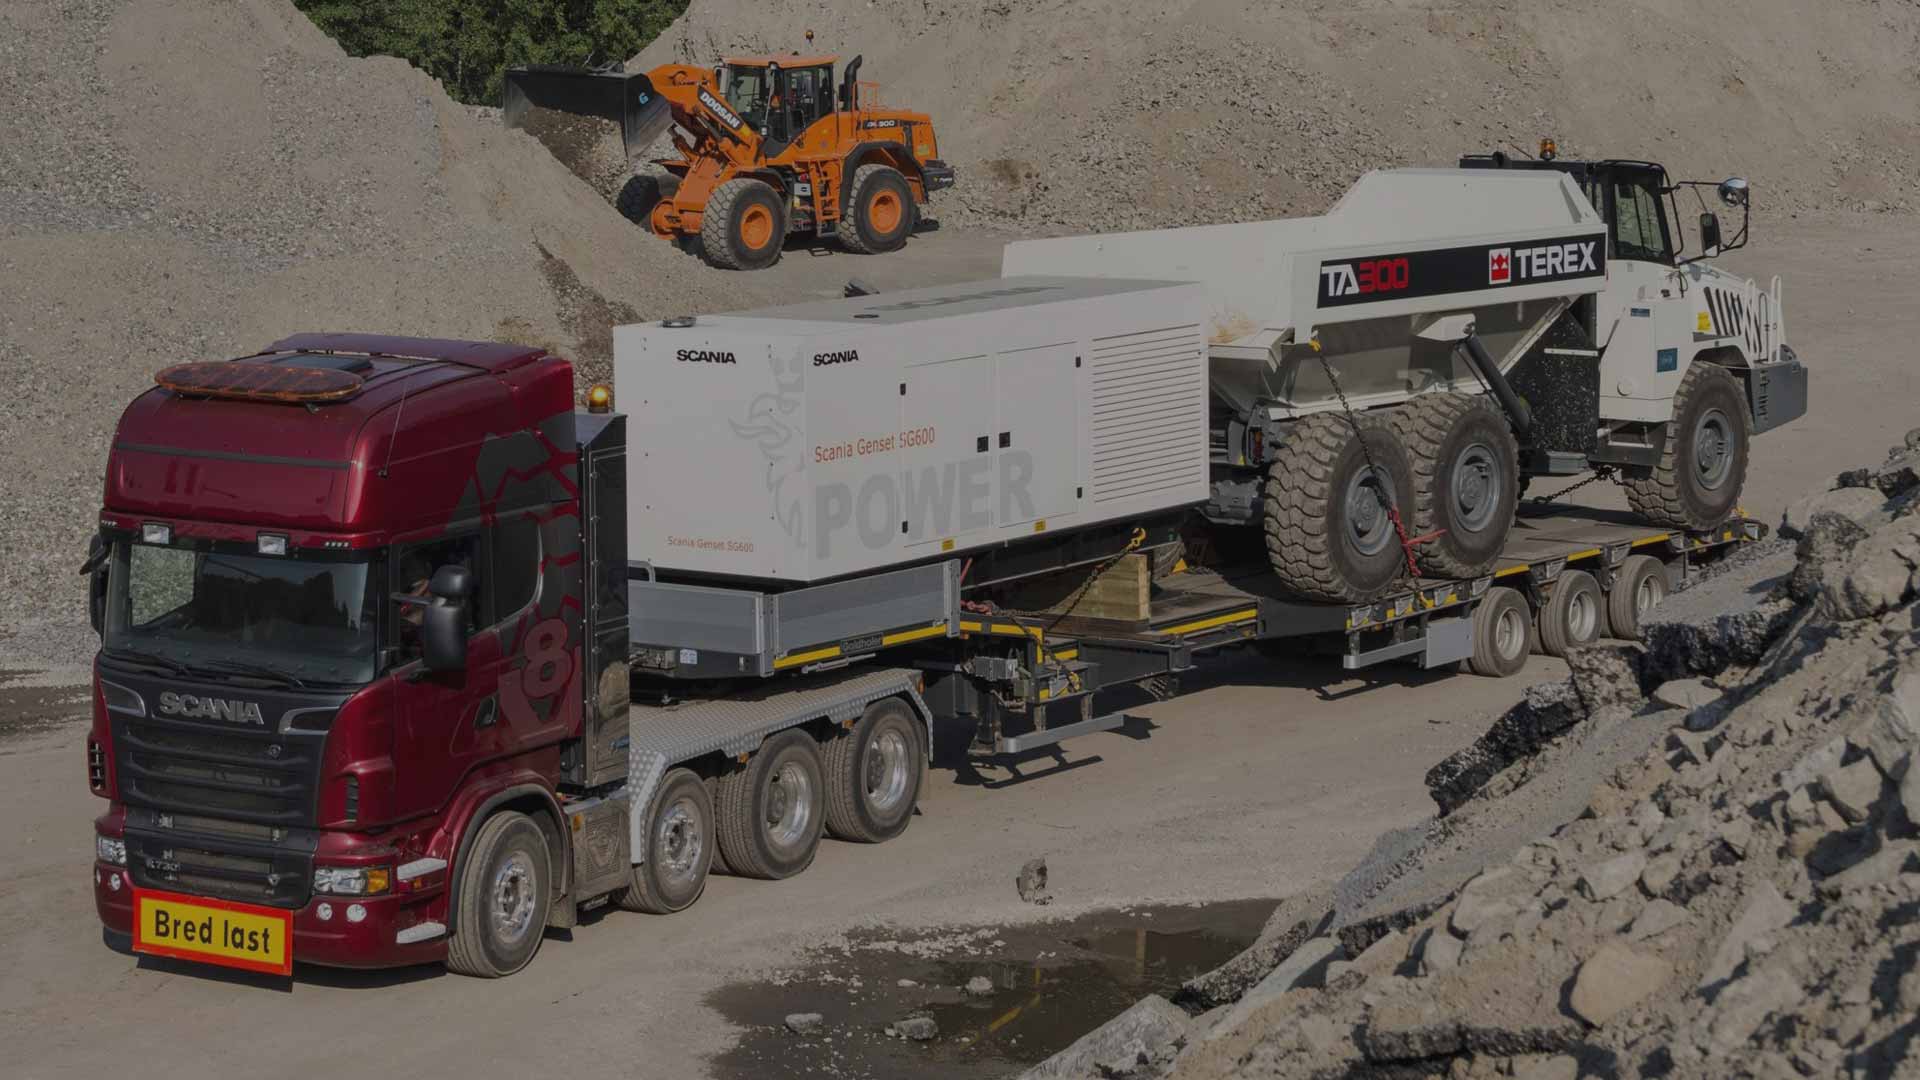 Тяжелые автопоезда Scania для перевозки тяжелых грузов